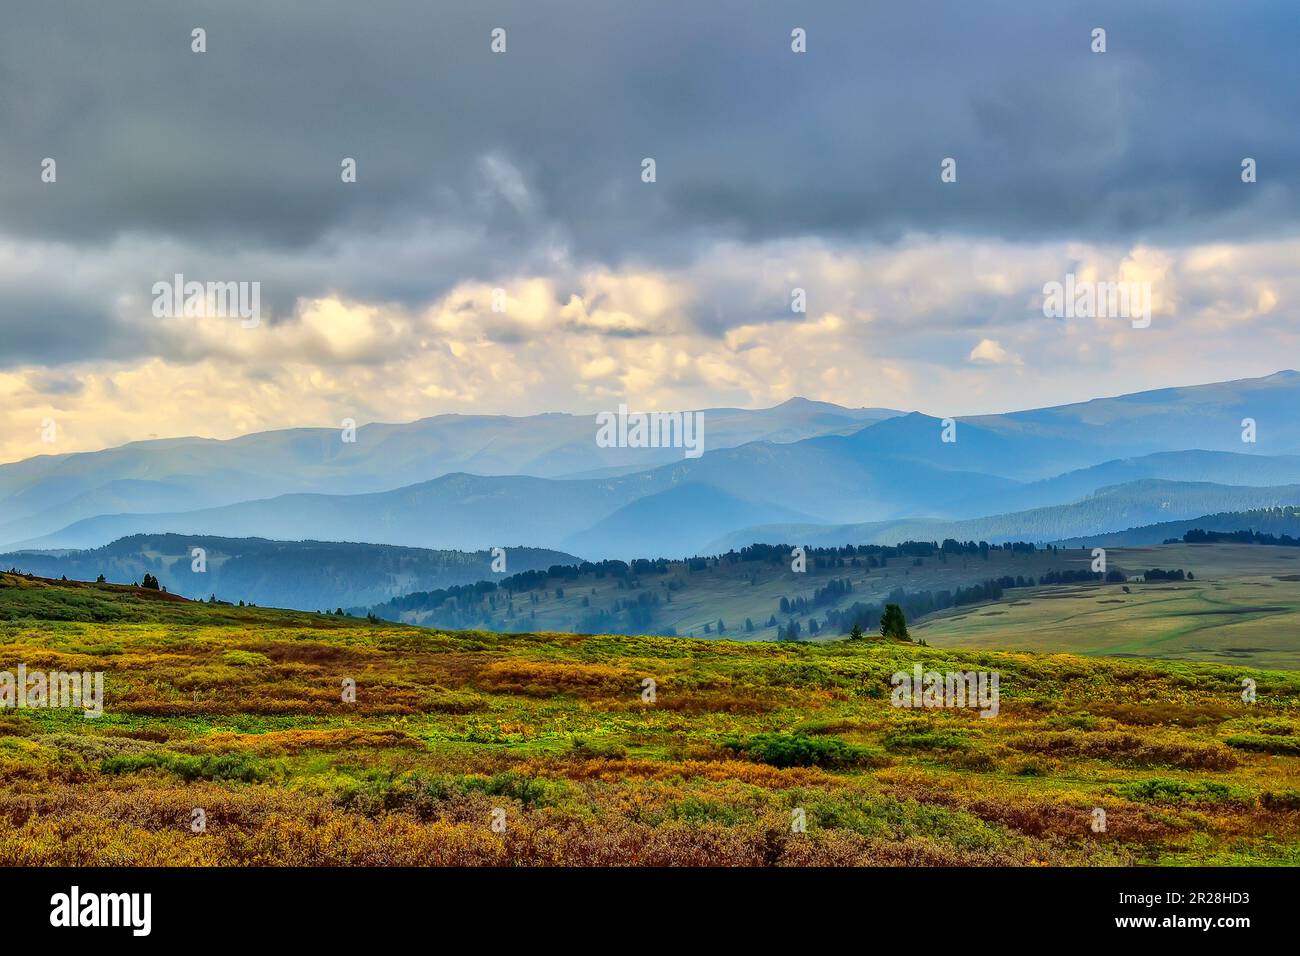 Magnifique paysage de montagne d'été par temps nuageux. Végétation naine colorée en premier plan et chaîne de montagnes de l'Altaï dans la brume bleue du matin Banque D'Images